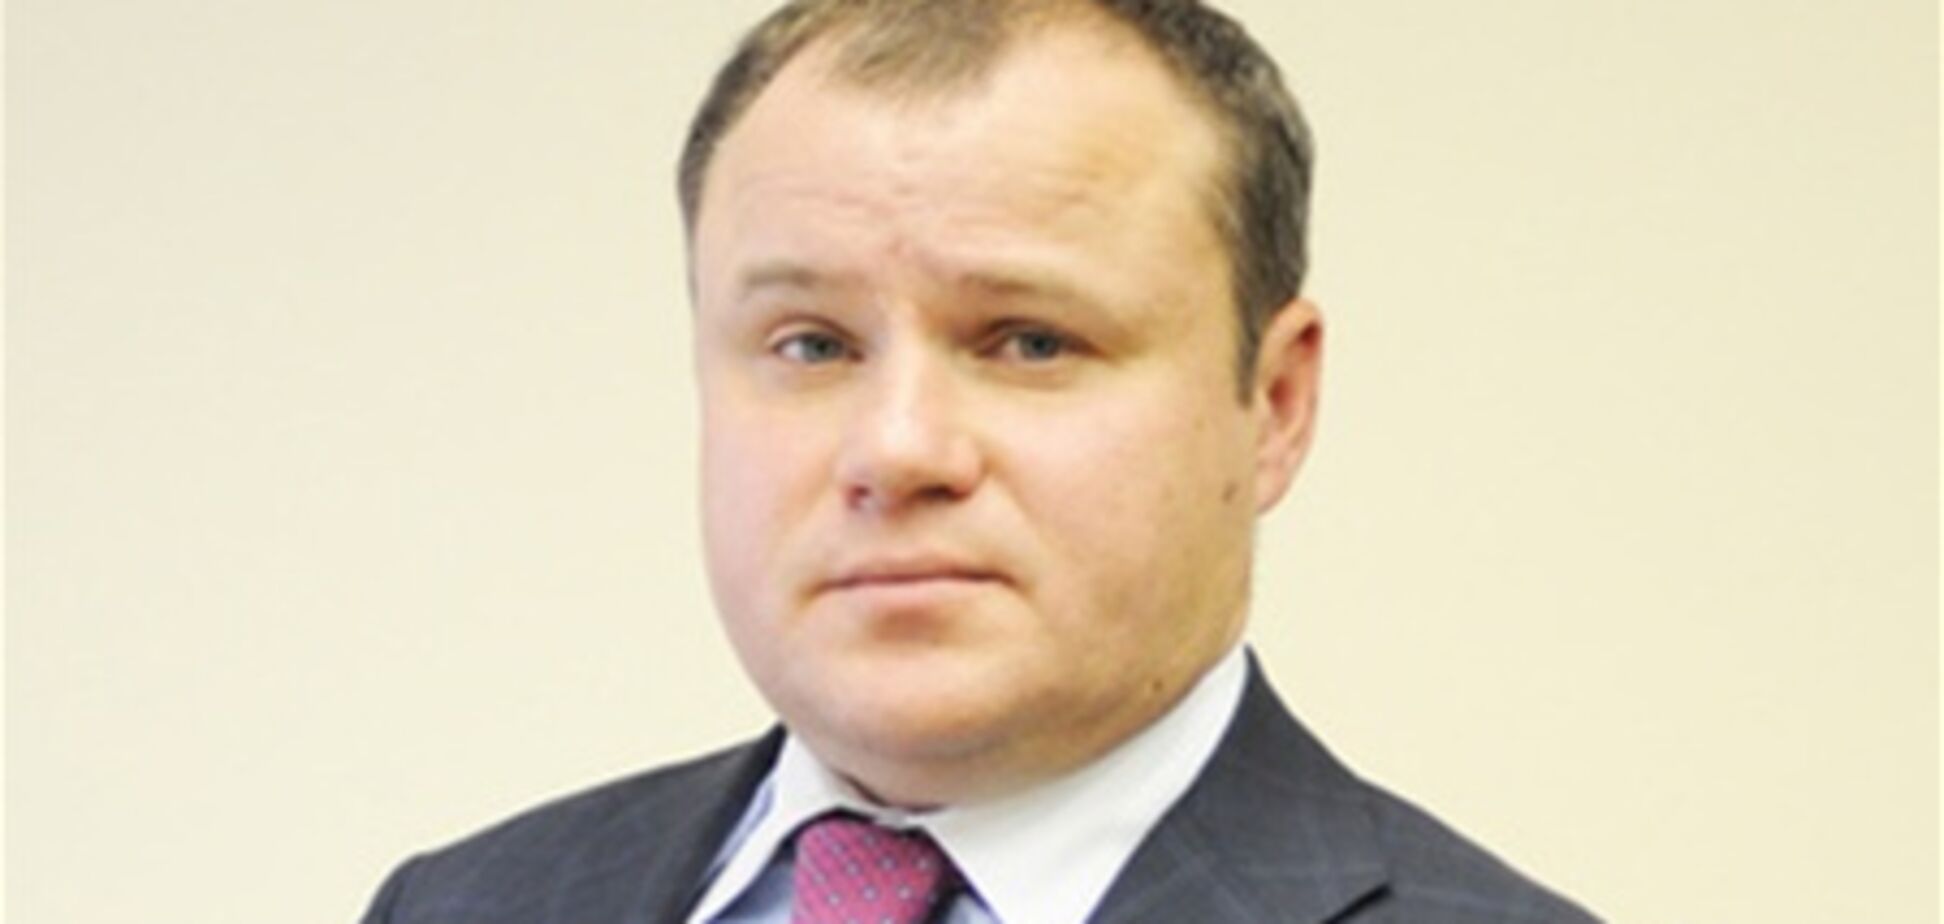 Ростислав Павличенко: оживить бизнес способен факторинг